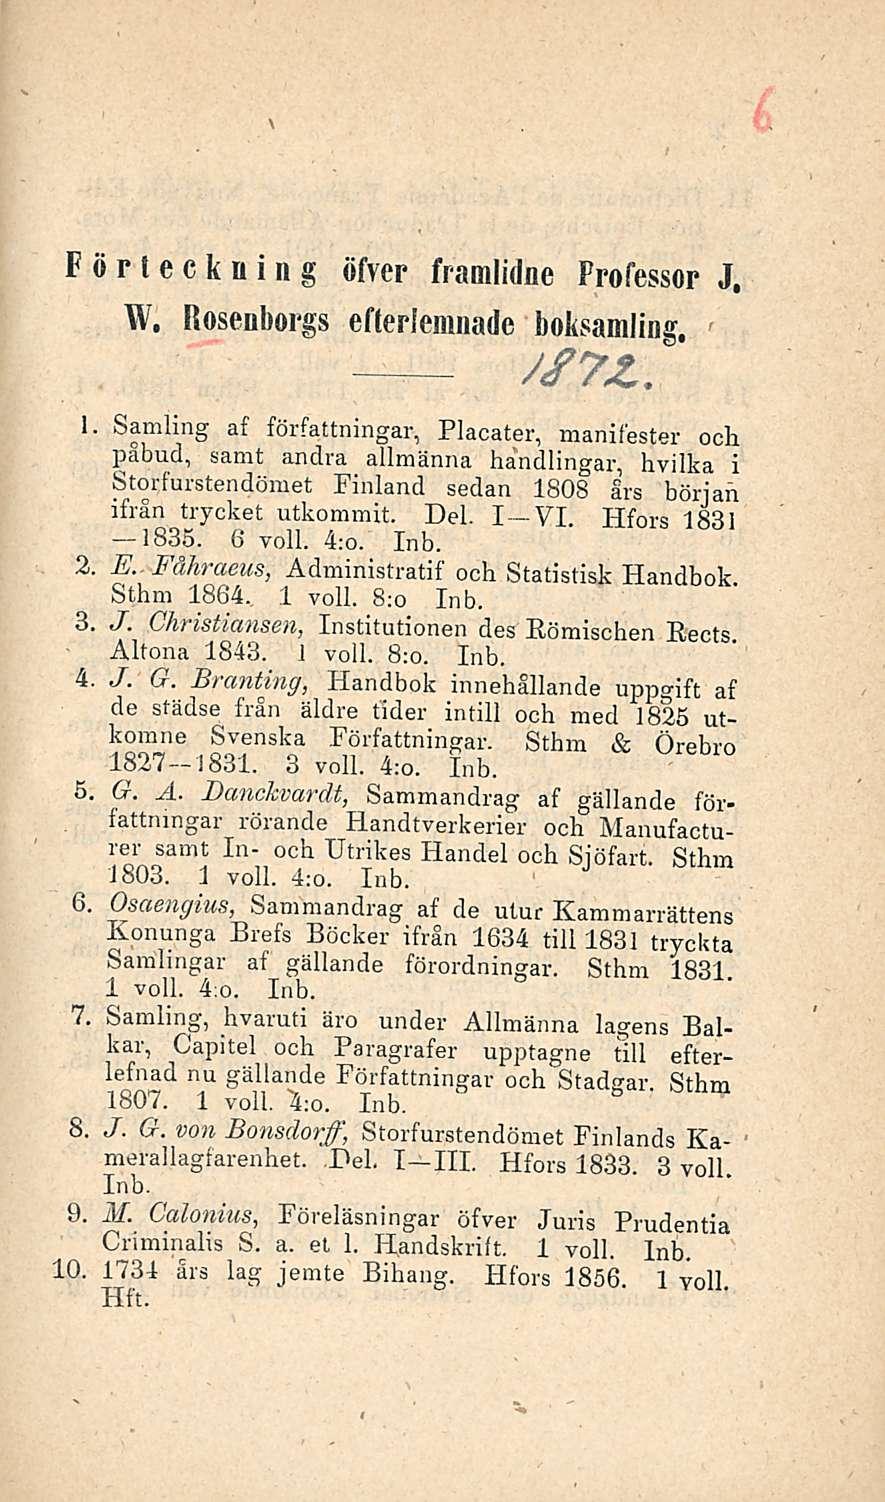 Förteckning öfver framlidne Frofessor J. W. Rosenborgs efteriemnade boksamling.